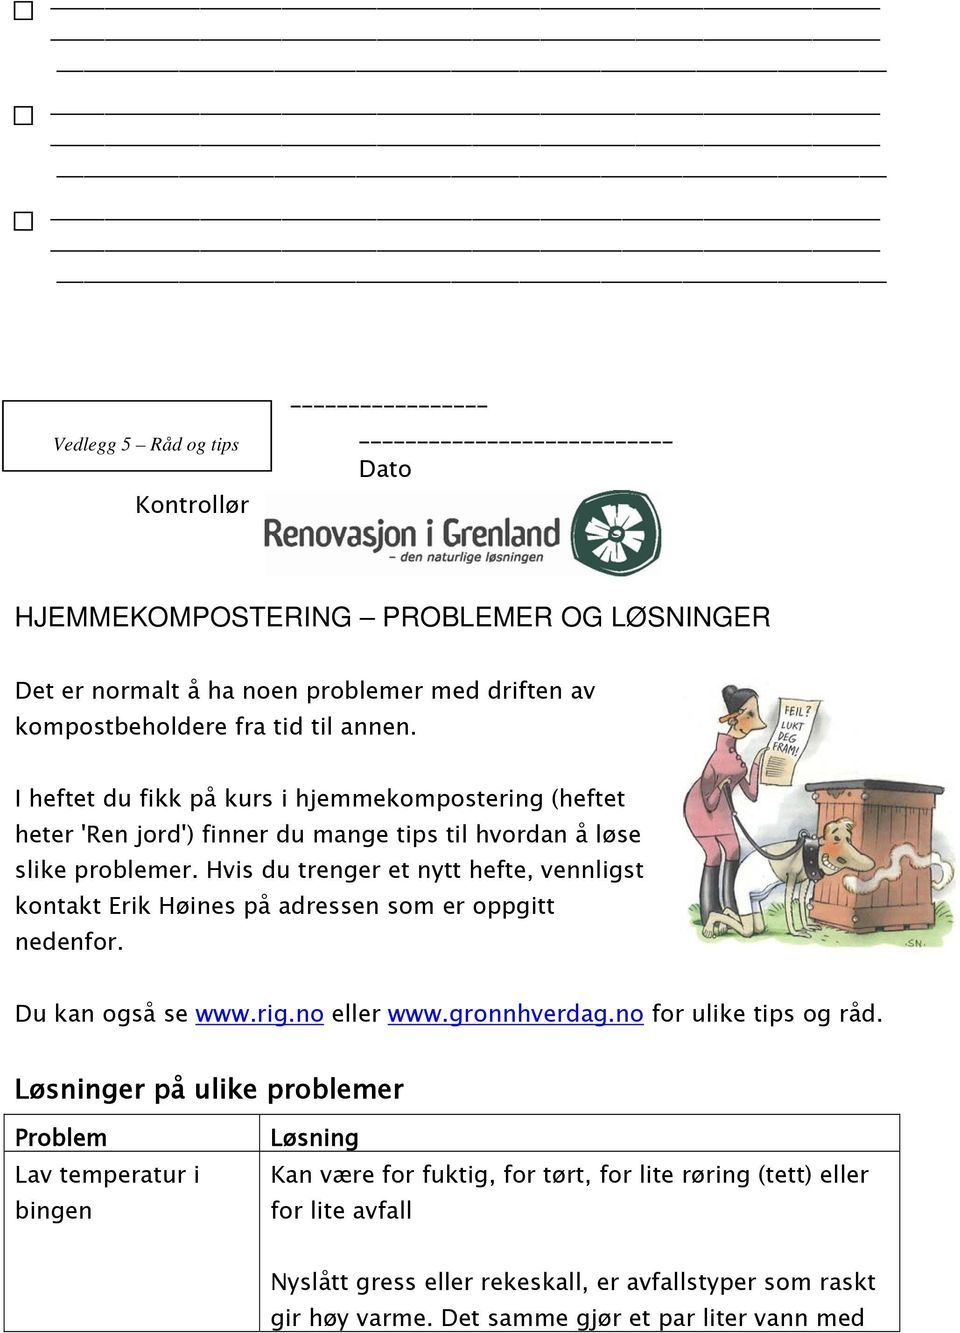 Hvis du trenger et nytt hefte, vennligst kontakt Erik Høines på adressen som er oppgitt nedenfor. Du kan også se www.rig.no eller www.gronnhverdag.no for ulike tips og råd.